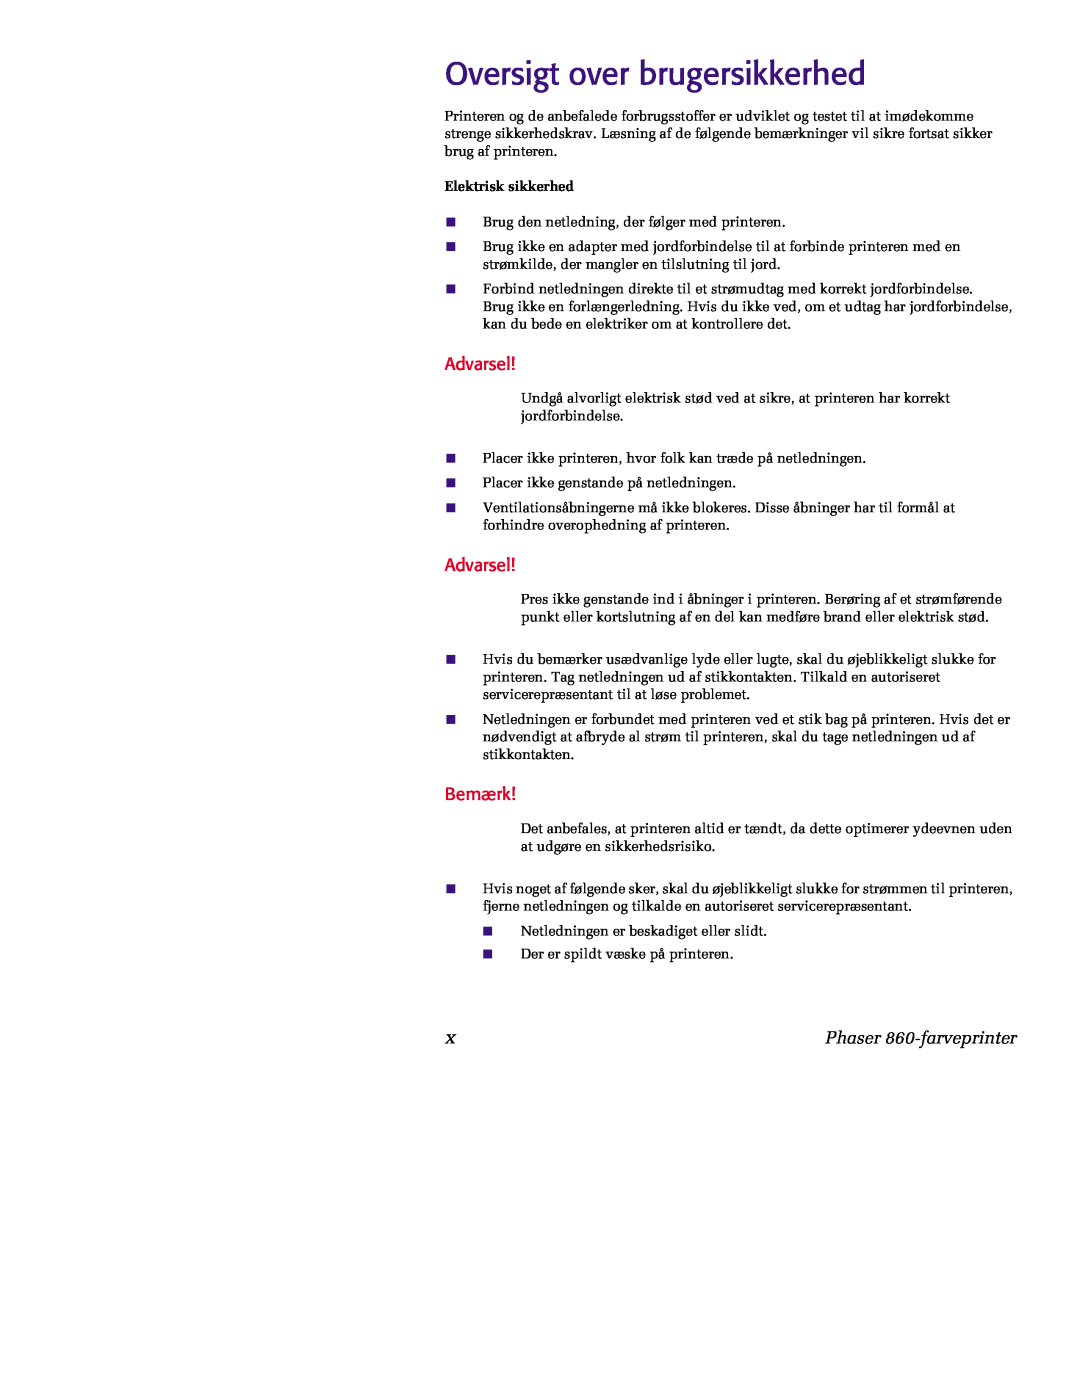 Tektronix manual Oversigt over brugersikkerhed, Advarsel, Bemærk, Phaser 860-farveprinter, Elektrisk sikkerhed 